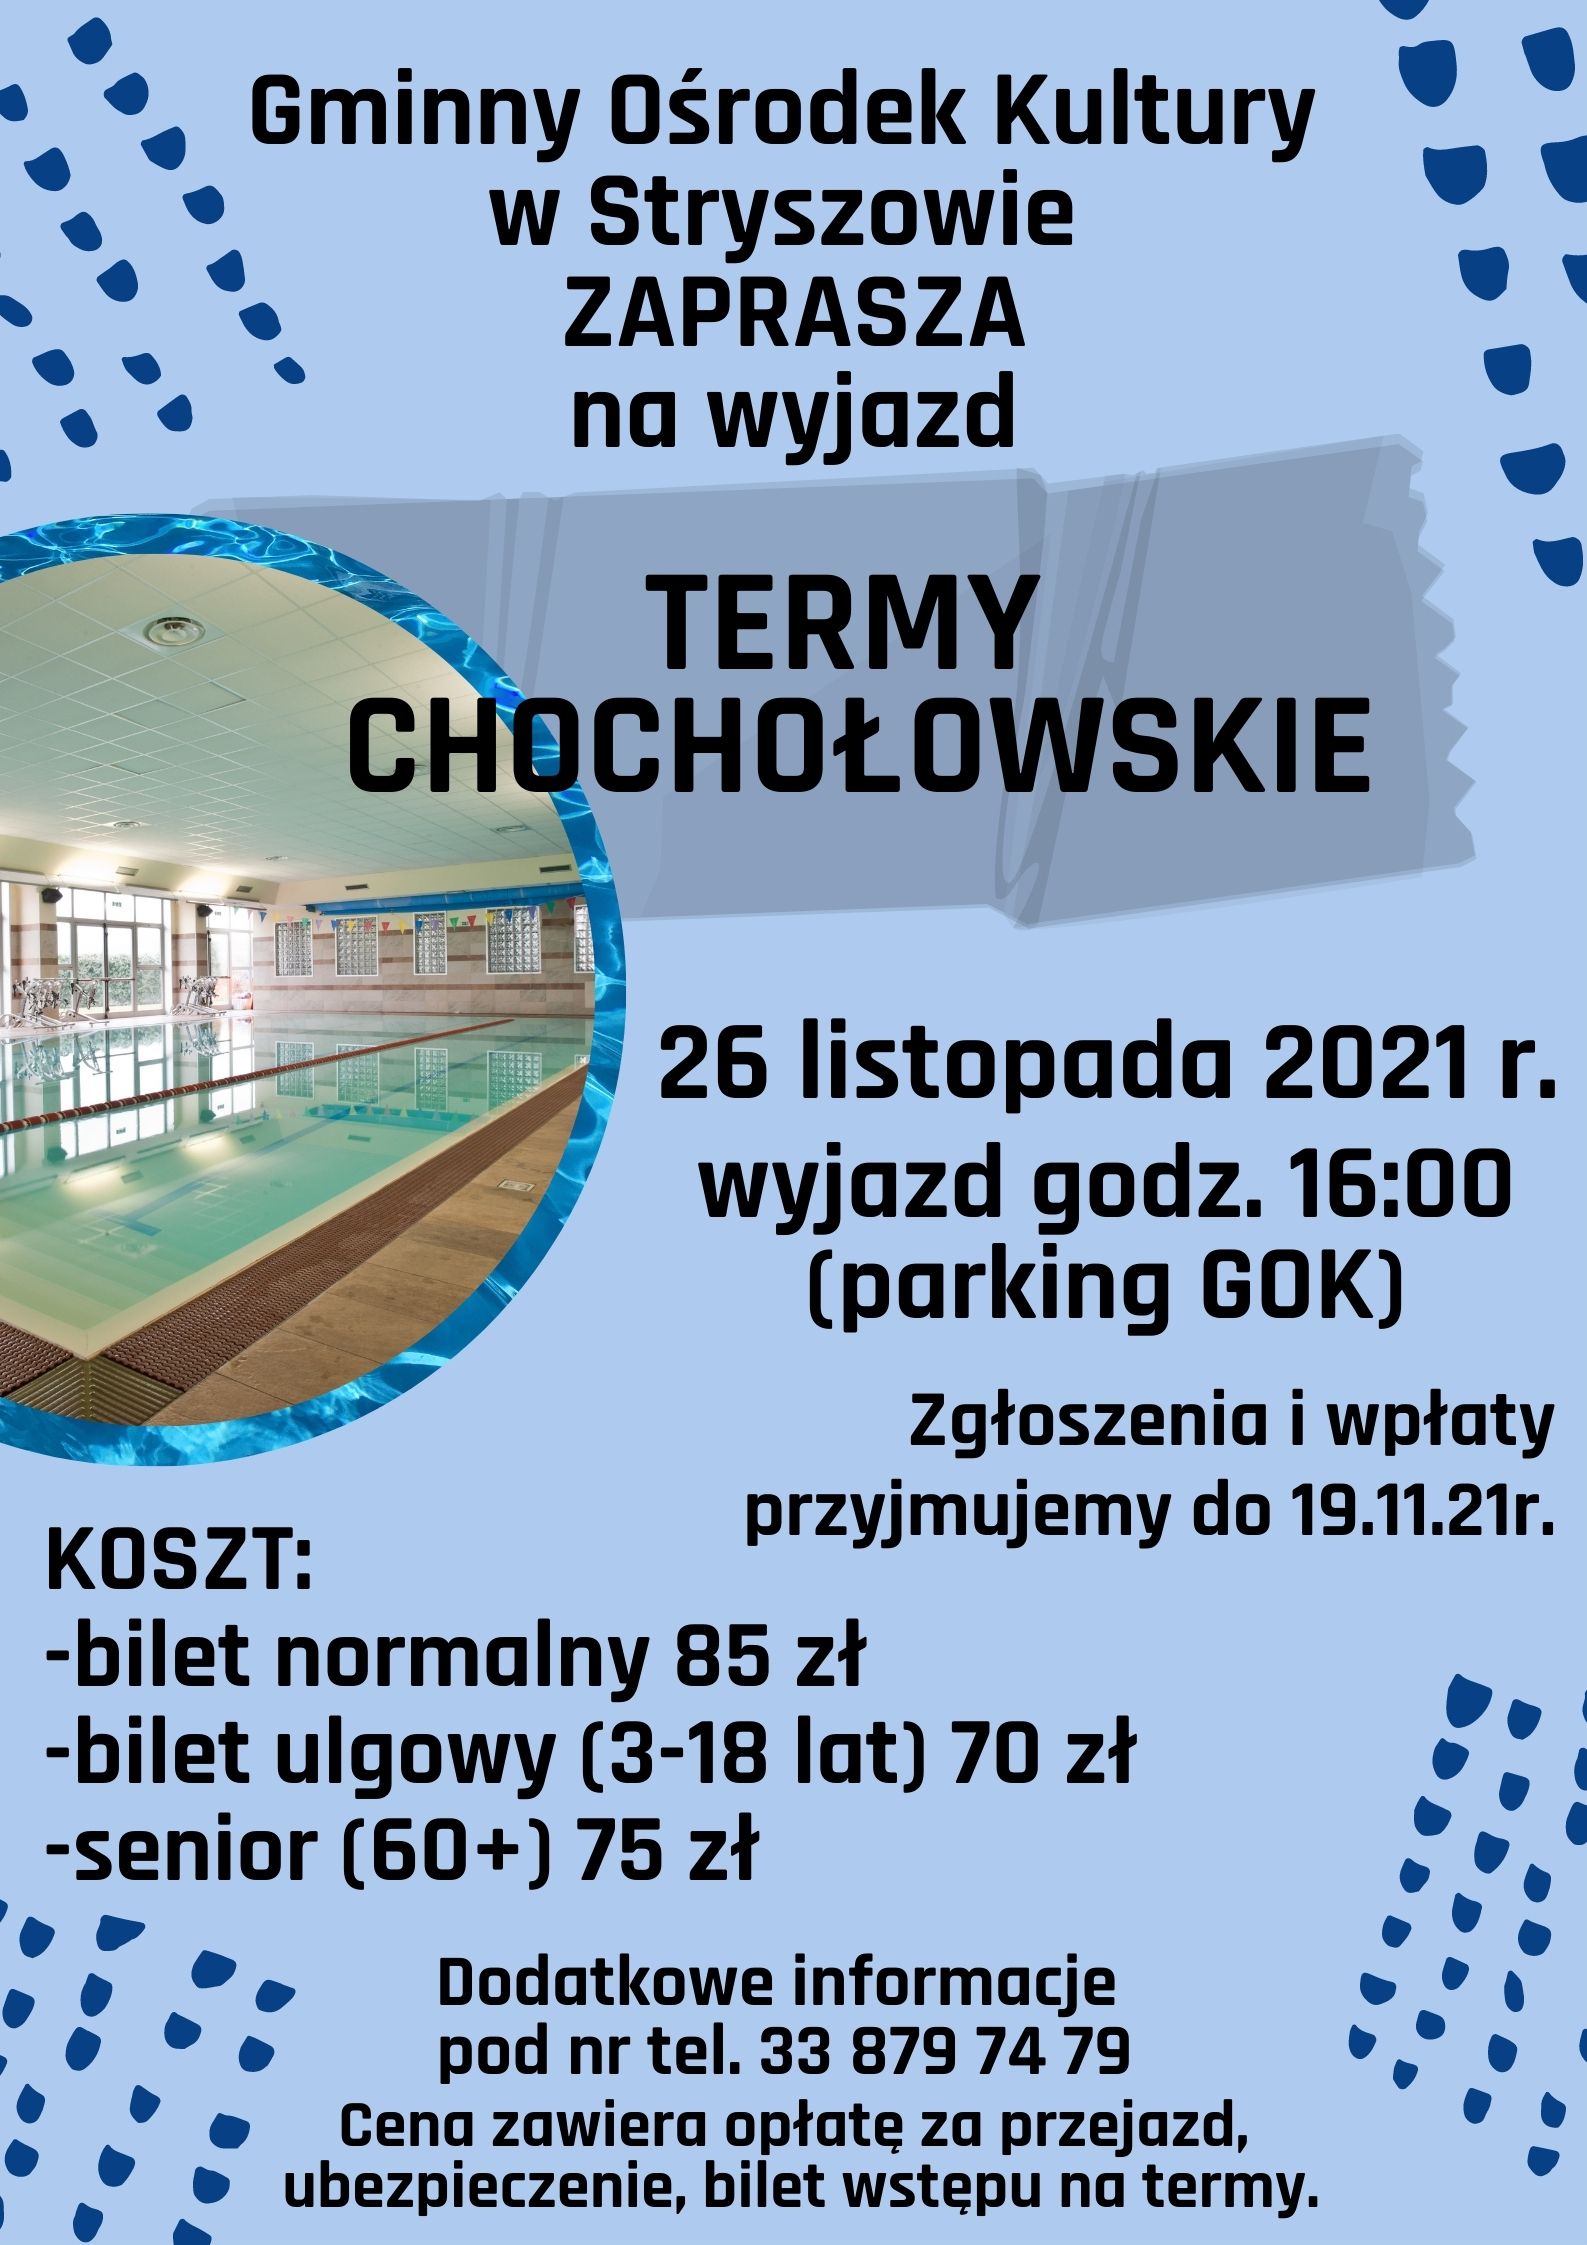 Gminny Ośrodek Kultury w Stryszowie z/s w Stroniu ZAPRASZA wszystkich chętnych na wyjazd na Termy Chochołowskie 26 listopada 2021 roku  wyjazd o godz. 16:00 (parking GOK). Zgłoszenia i wpłaty przyjmujemy do 19 listopada 2021 r.